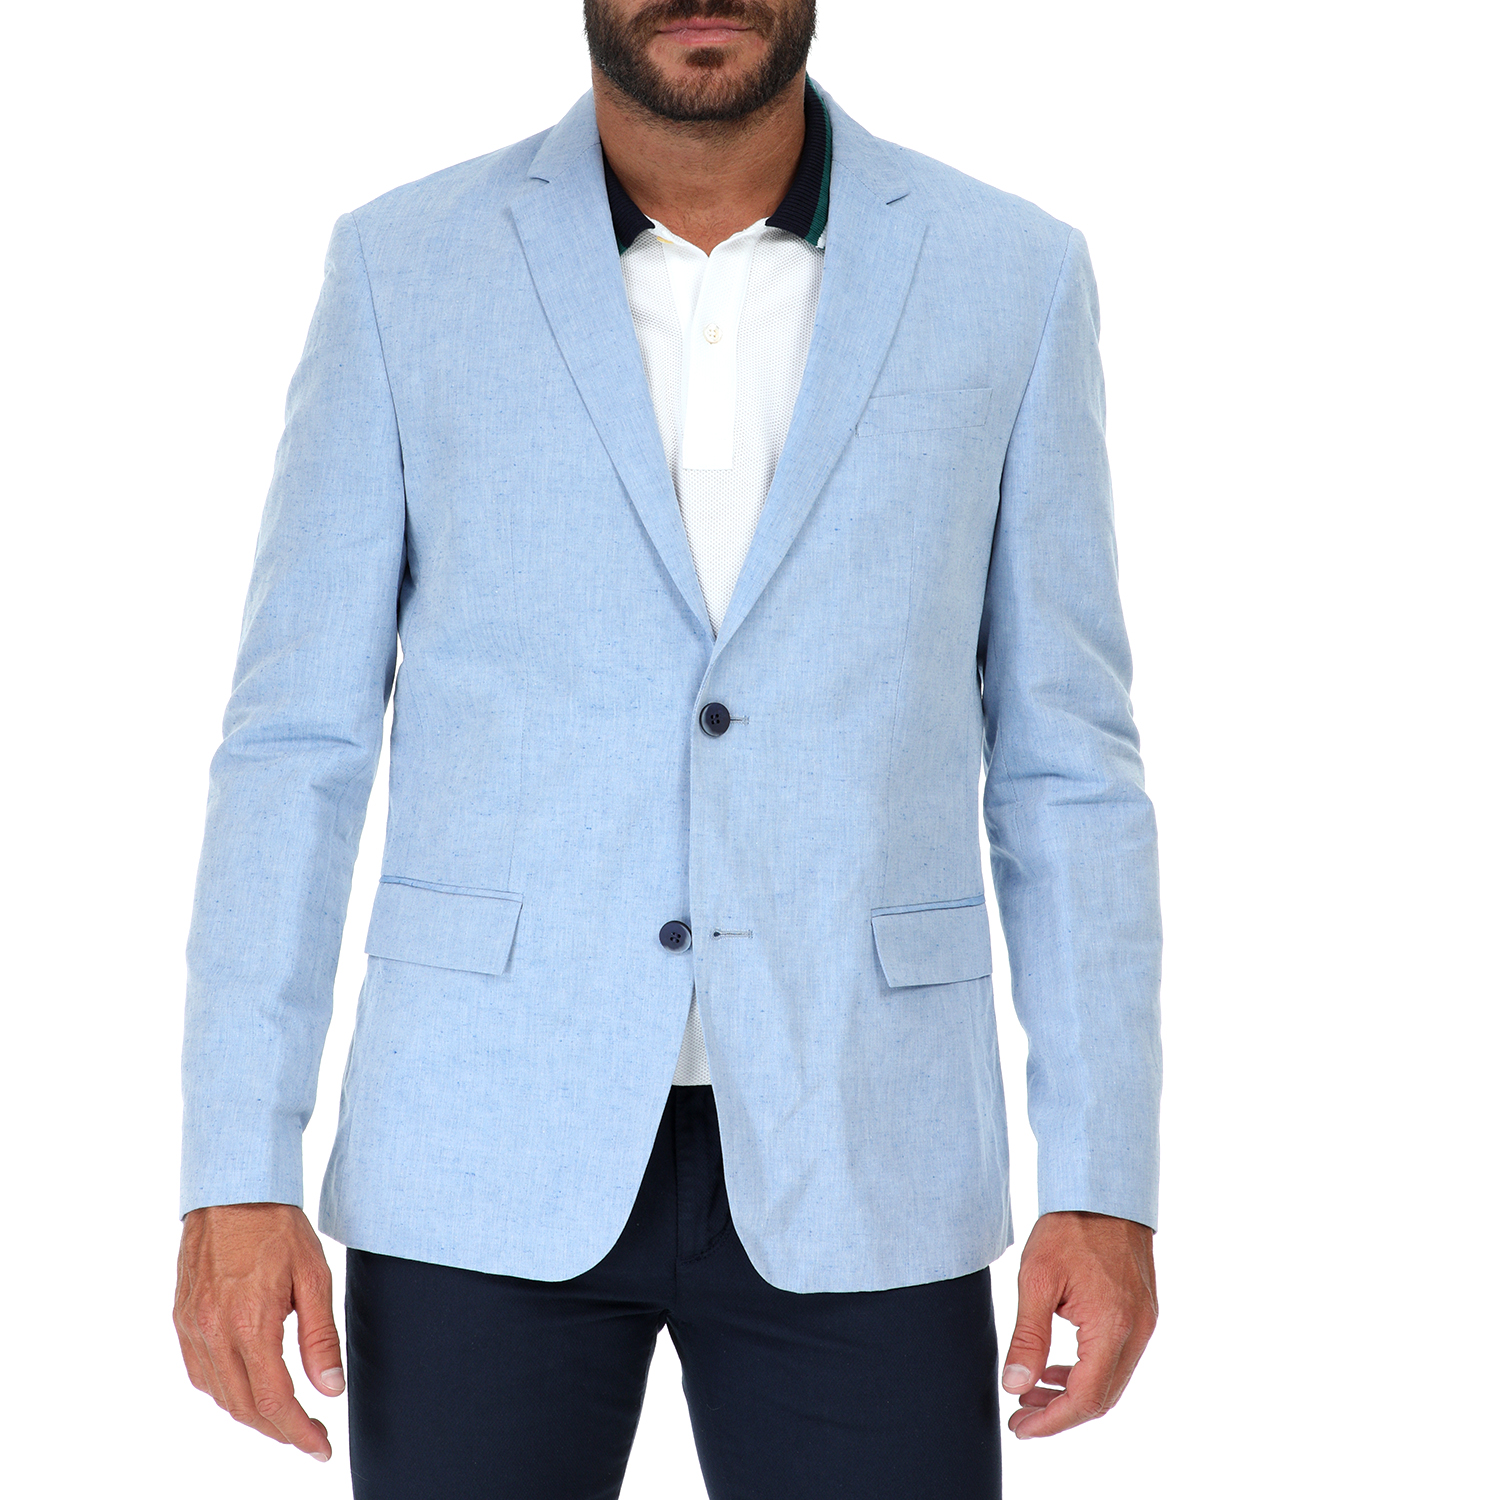 Ανδρικά/Ρούχα/Πανωφόρια/Σακάκια CK - Ανδρικό σακάκι CK SUMMER CHAMBRAY γαλάζιο